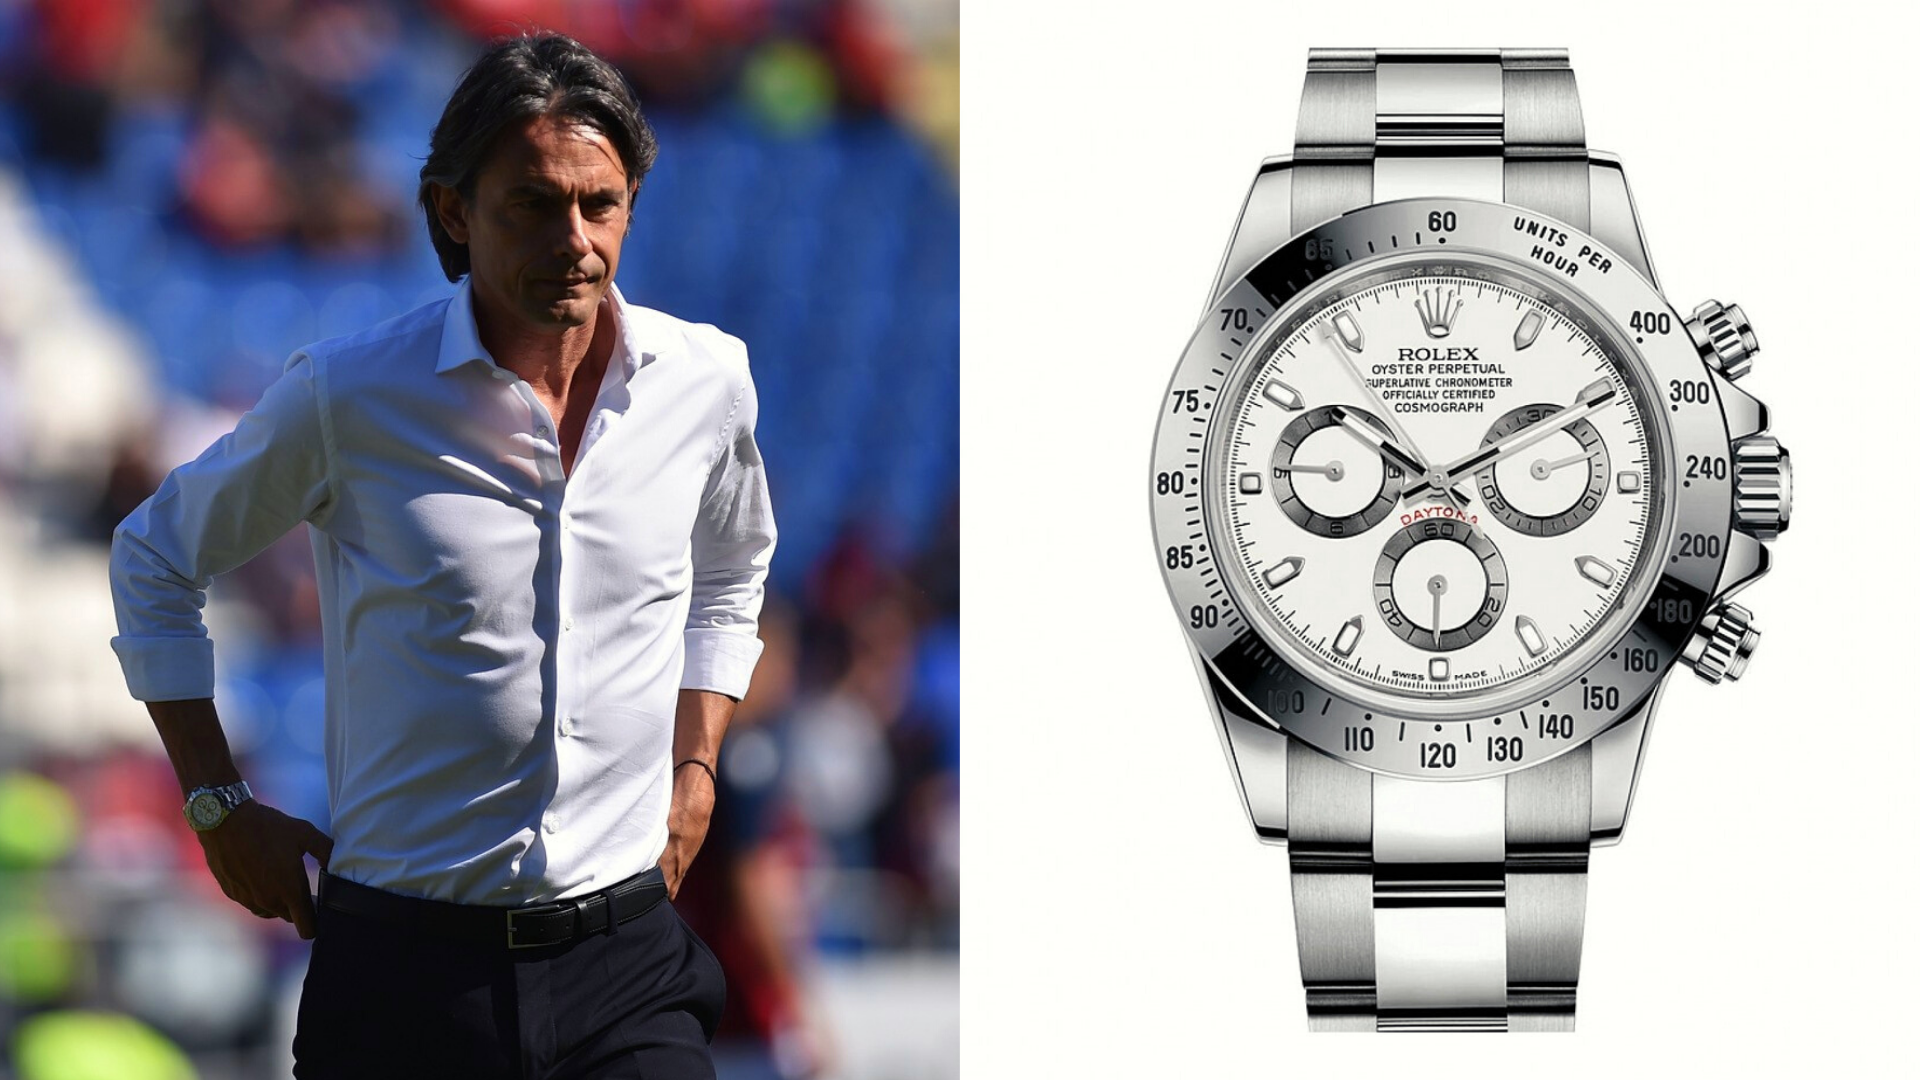 L’estetica e il lusso degli orologi nel calcio italiano